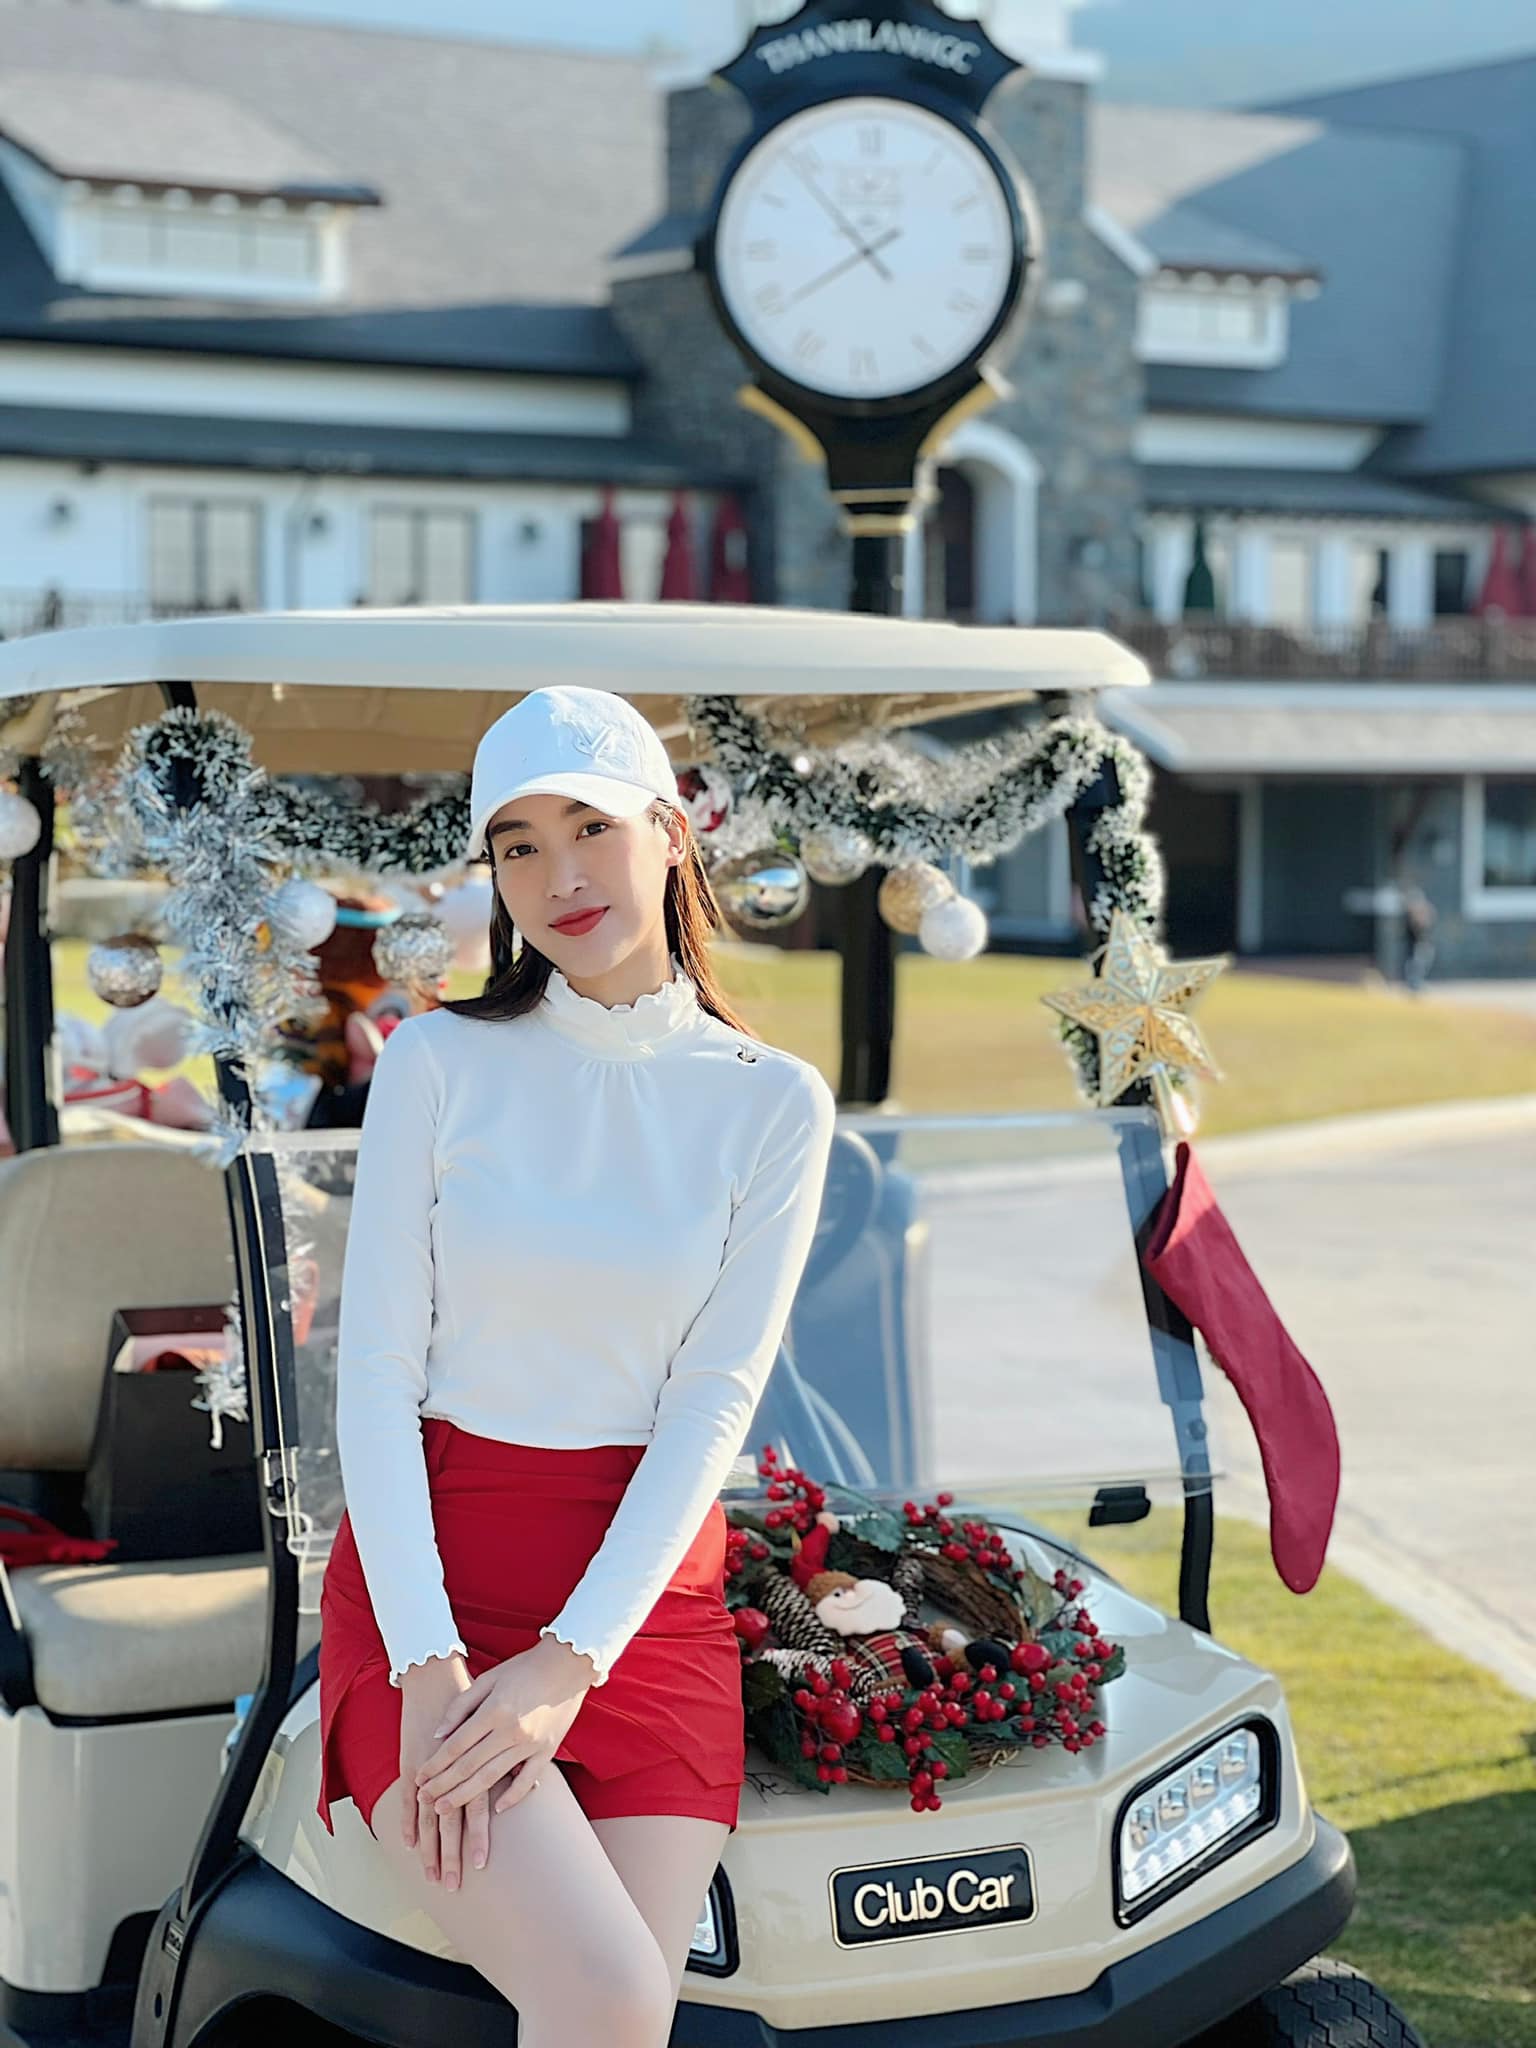 Hoa hậu Đỗ Mỹ Linh đi chơi golf vẫn đậm chất Noel với trang phục trắng - đỏ. Vừa qua, nàng hậu nhận phải nhiều ý kiến trái chiều trên mạng xã hội với đoạn clip 'hất tay' Hoa hậu Đỗ Thị Hà. Dù đã lên tiếng giải thích nhưng những bình luận chỉ trích cô vẫn không hề nhỏ.